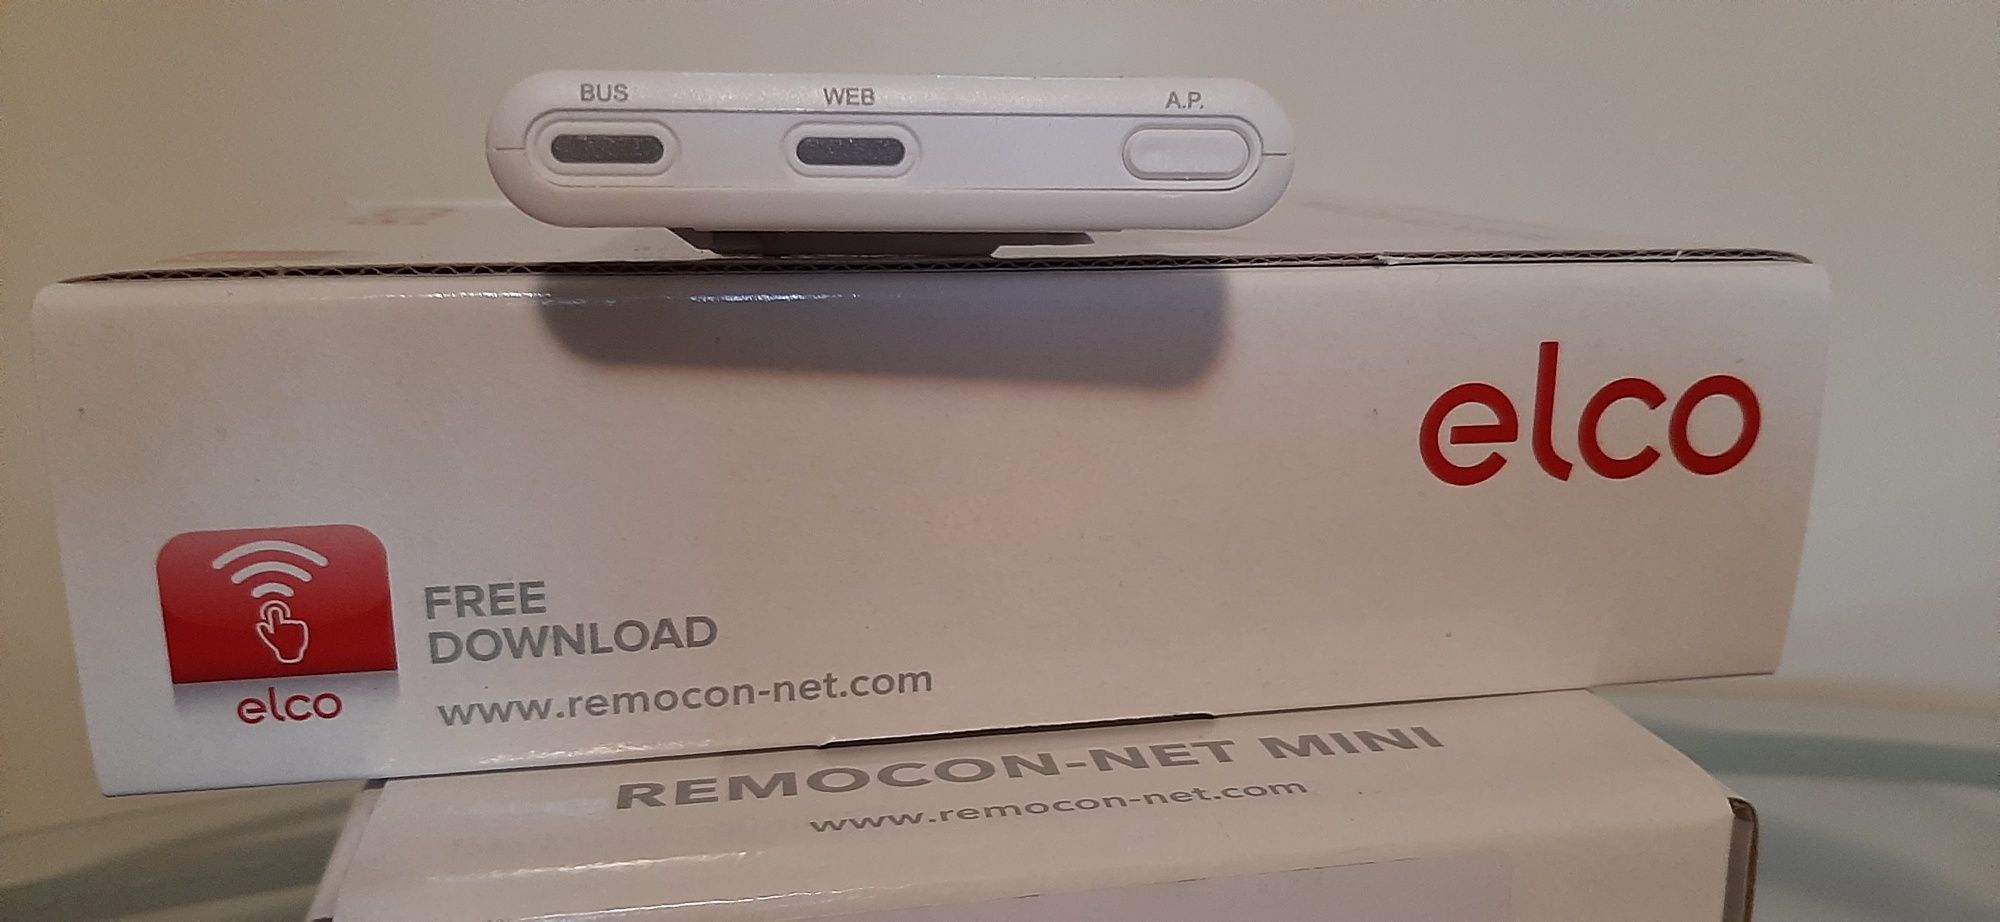 Elco sistema wi-fi remocon net mini